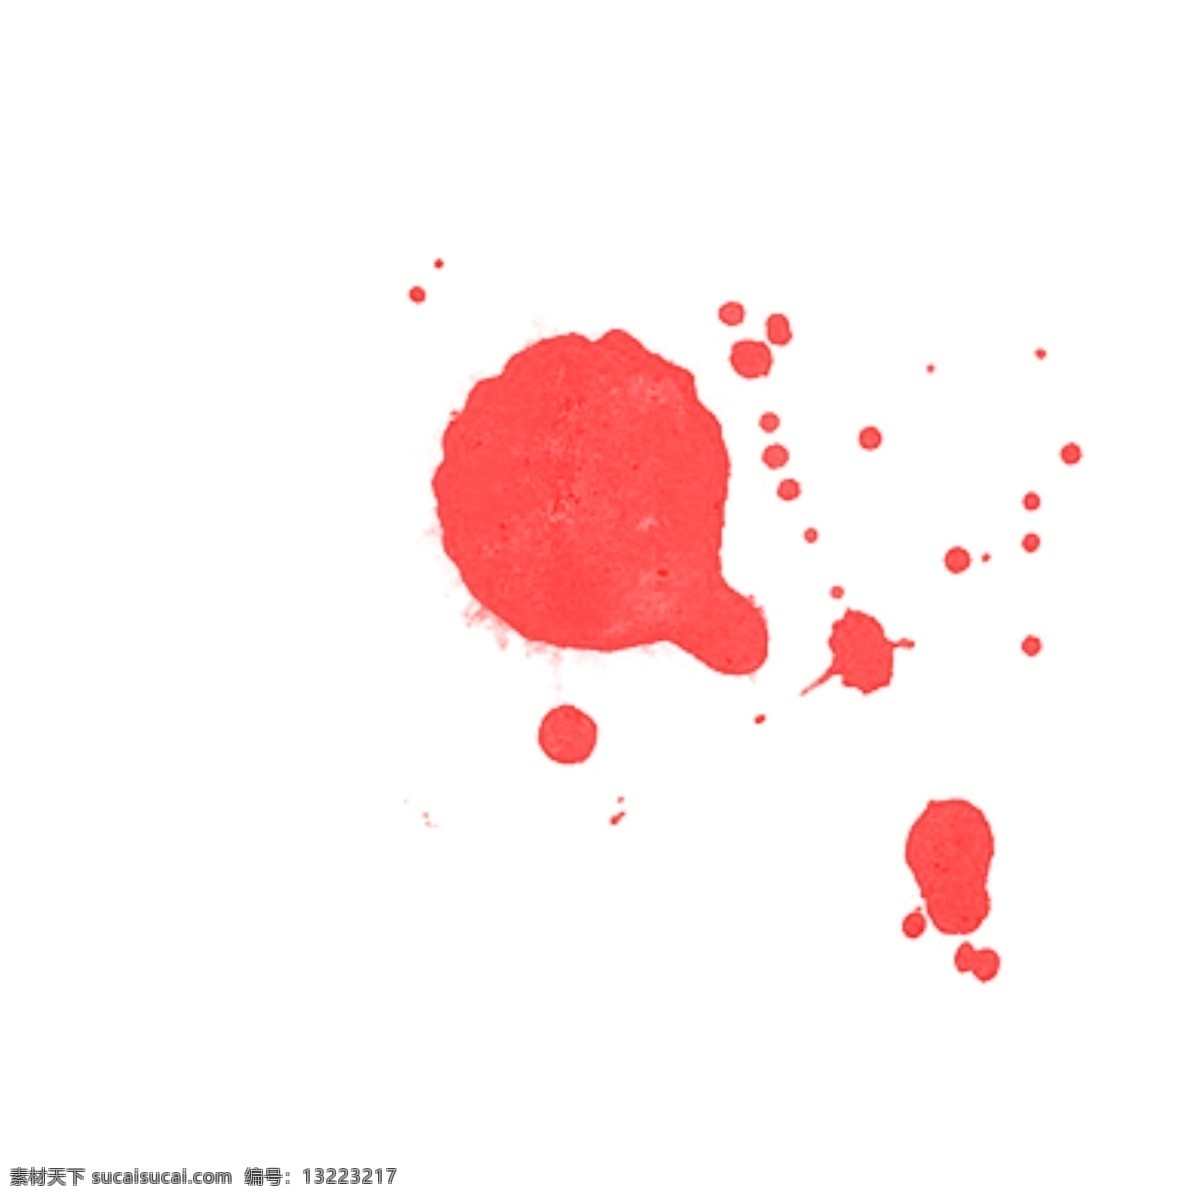 水彩 红色 圆圈 泼墨 卡通 手绘 创意 抽象 艺术 新意 水墨画 中国风 个性 画技 画法 线条 笔刷